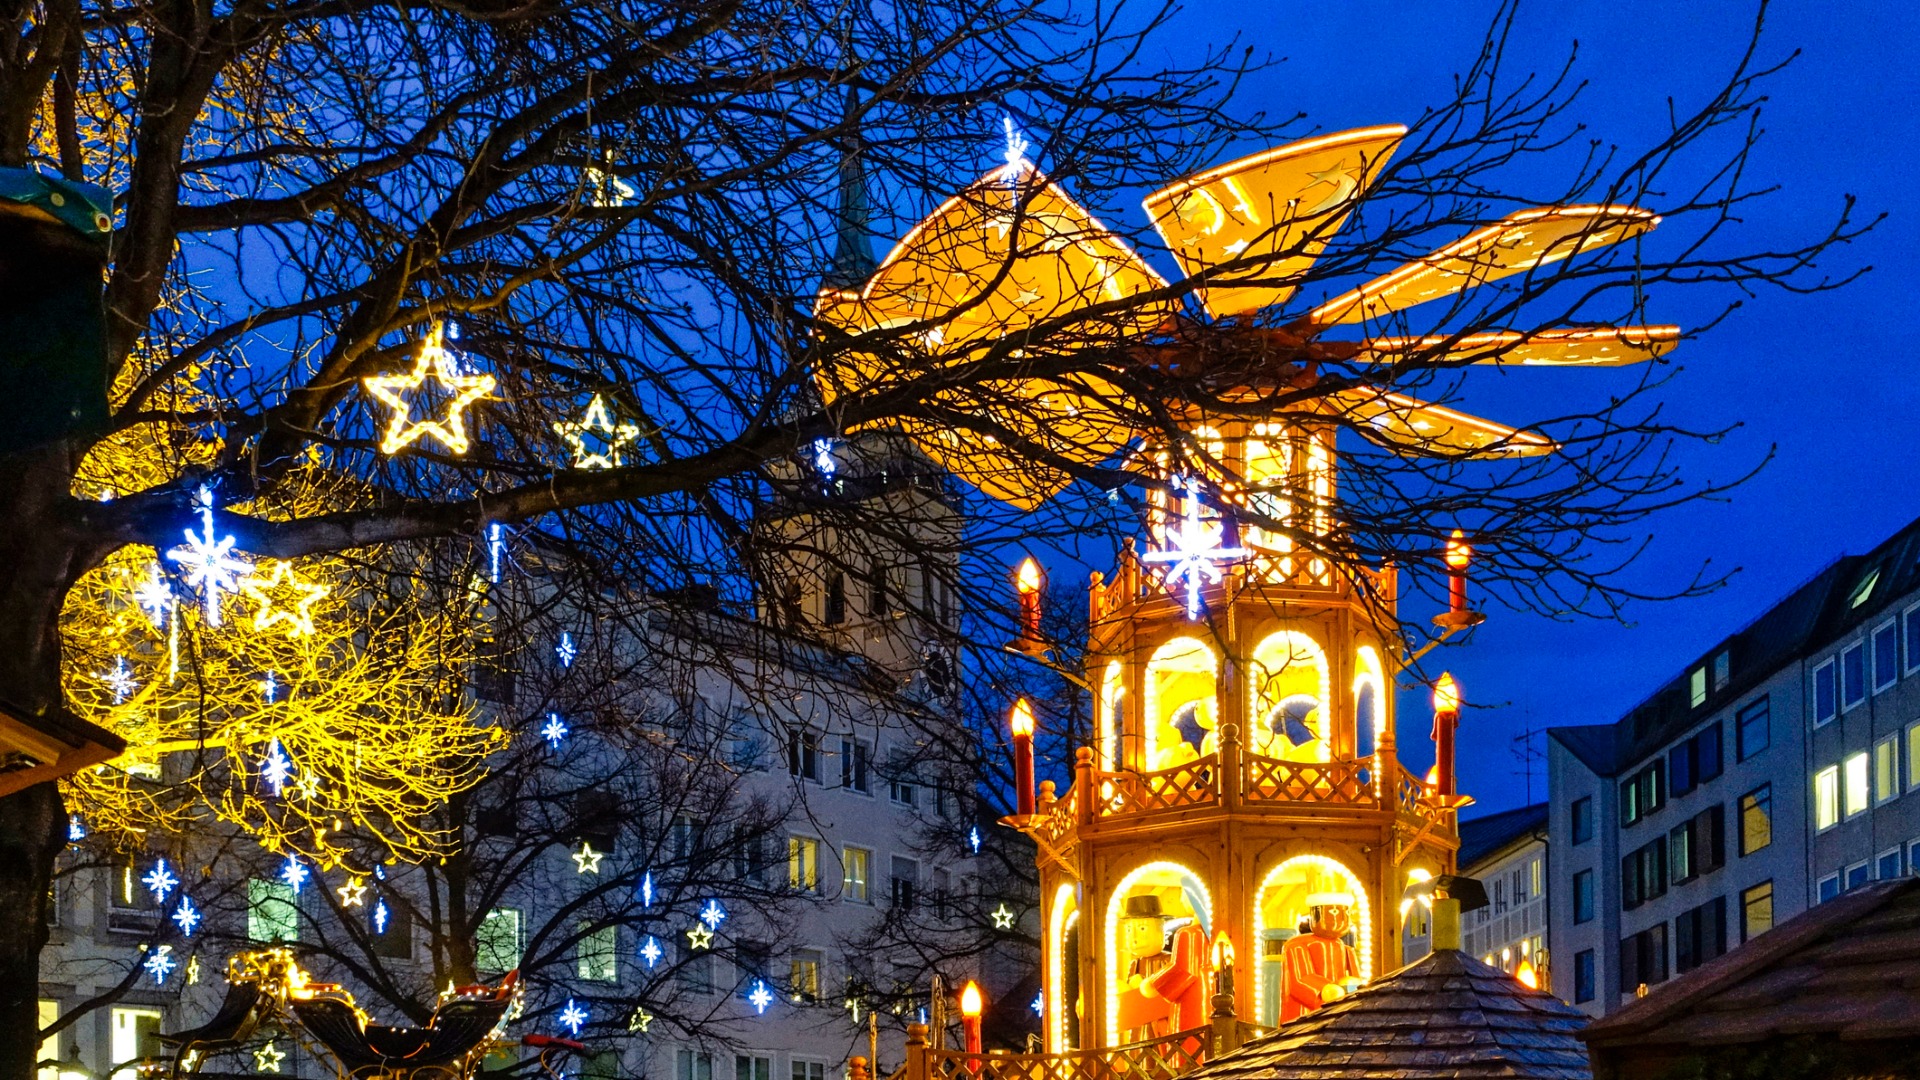 Această imagine prezintă un carusel din lemn la o piață de Crăciun din München. 